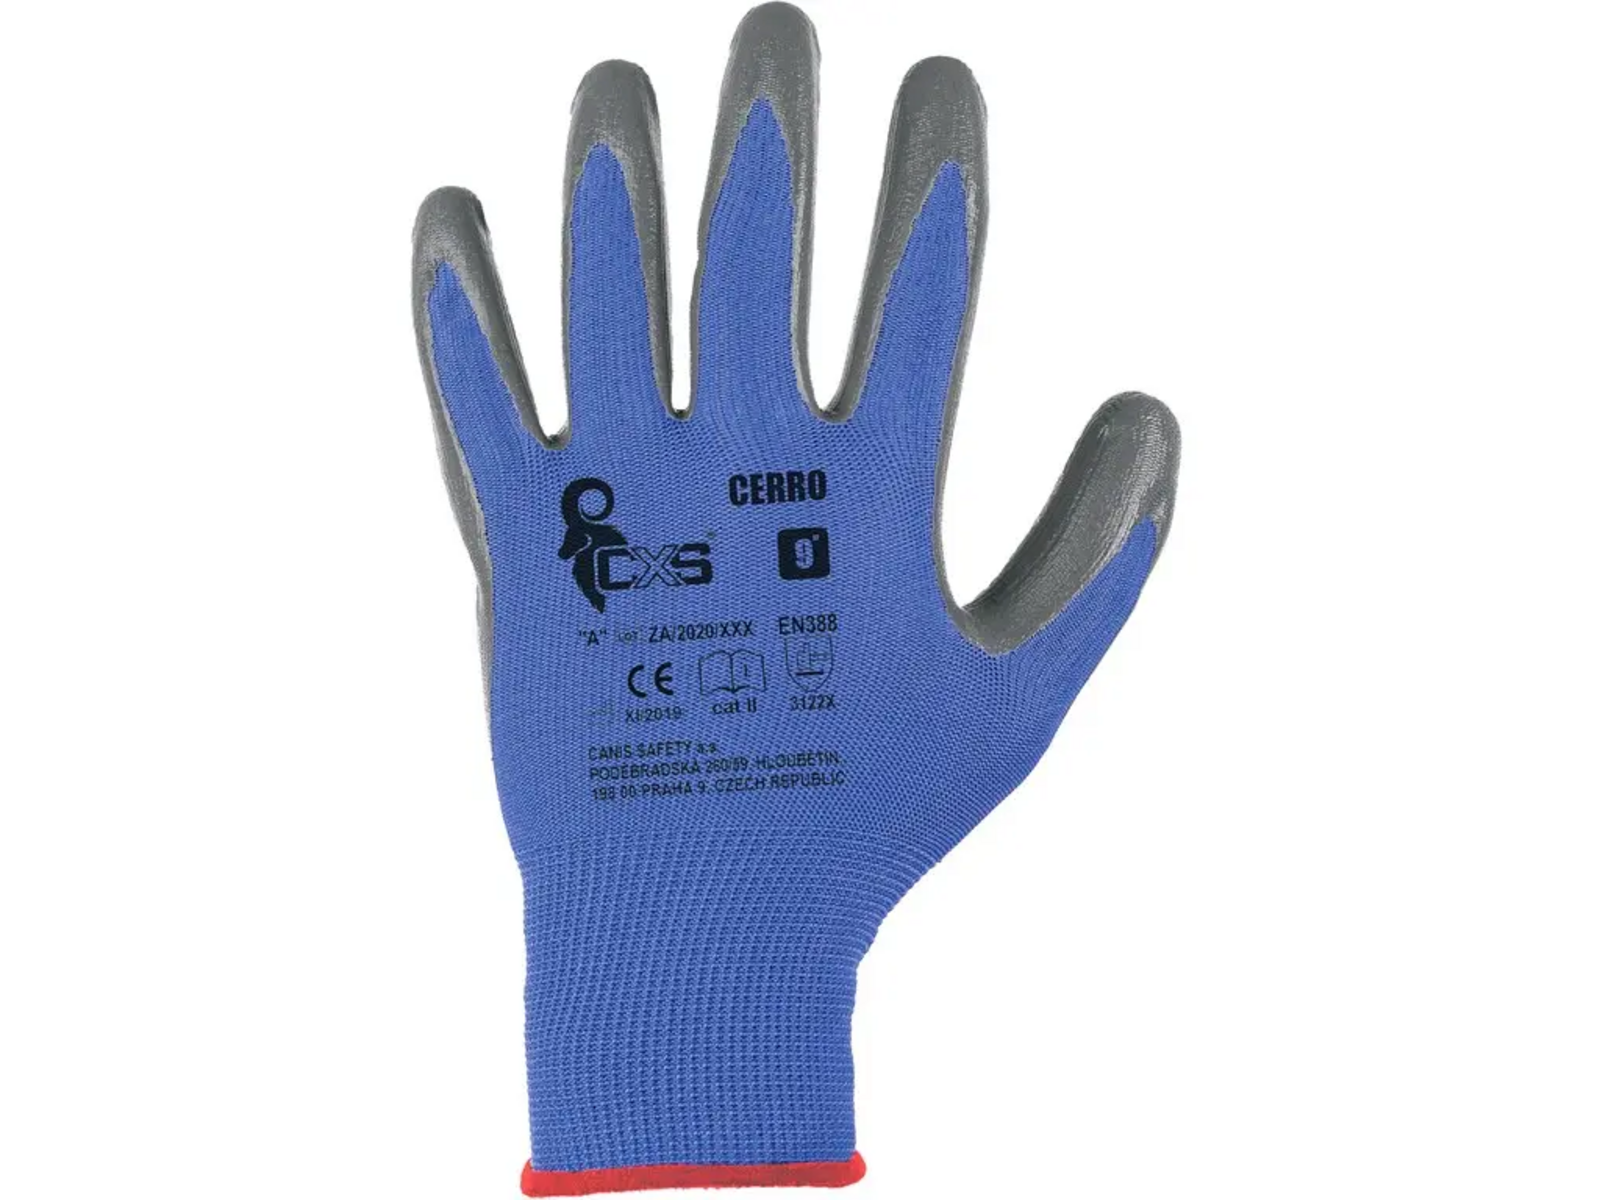 Povrstvené rukavice CXS Cerro - veľkosť: 8/M, farba: modrá/sivá